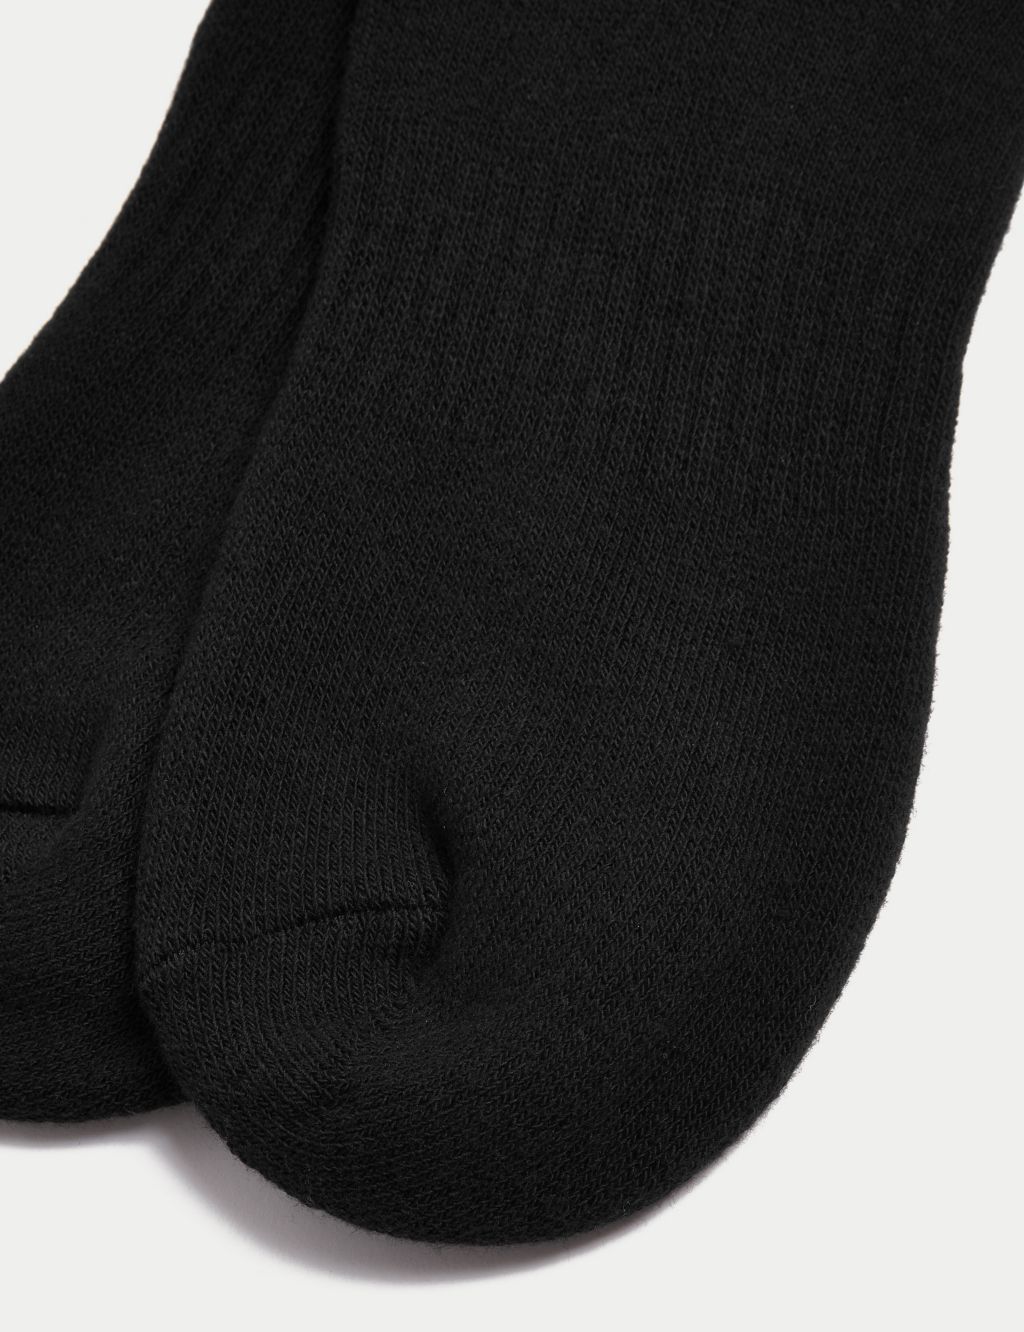 Men's Socks | Socks for Men | M&S